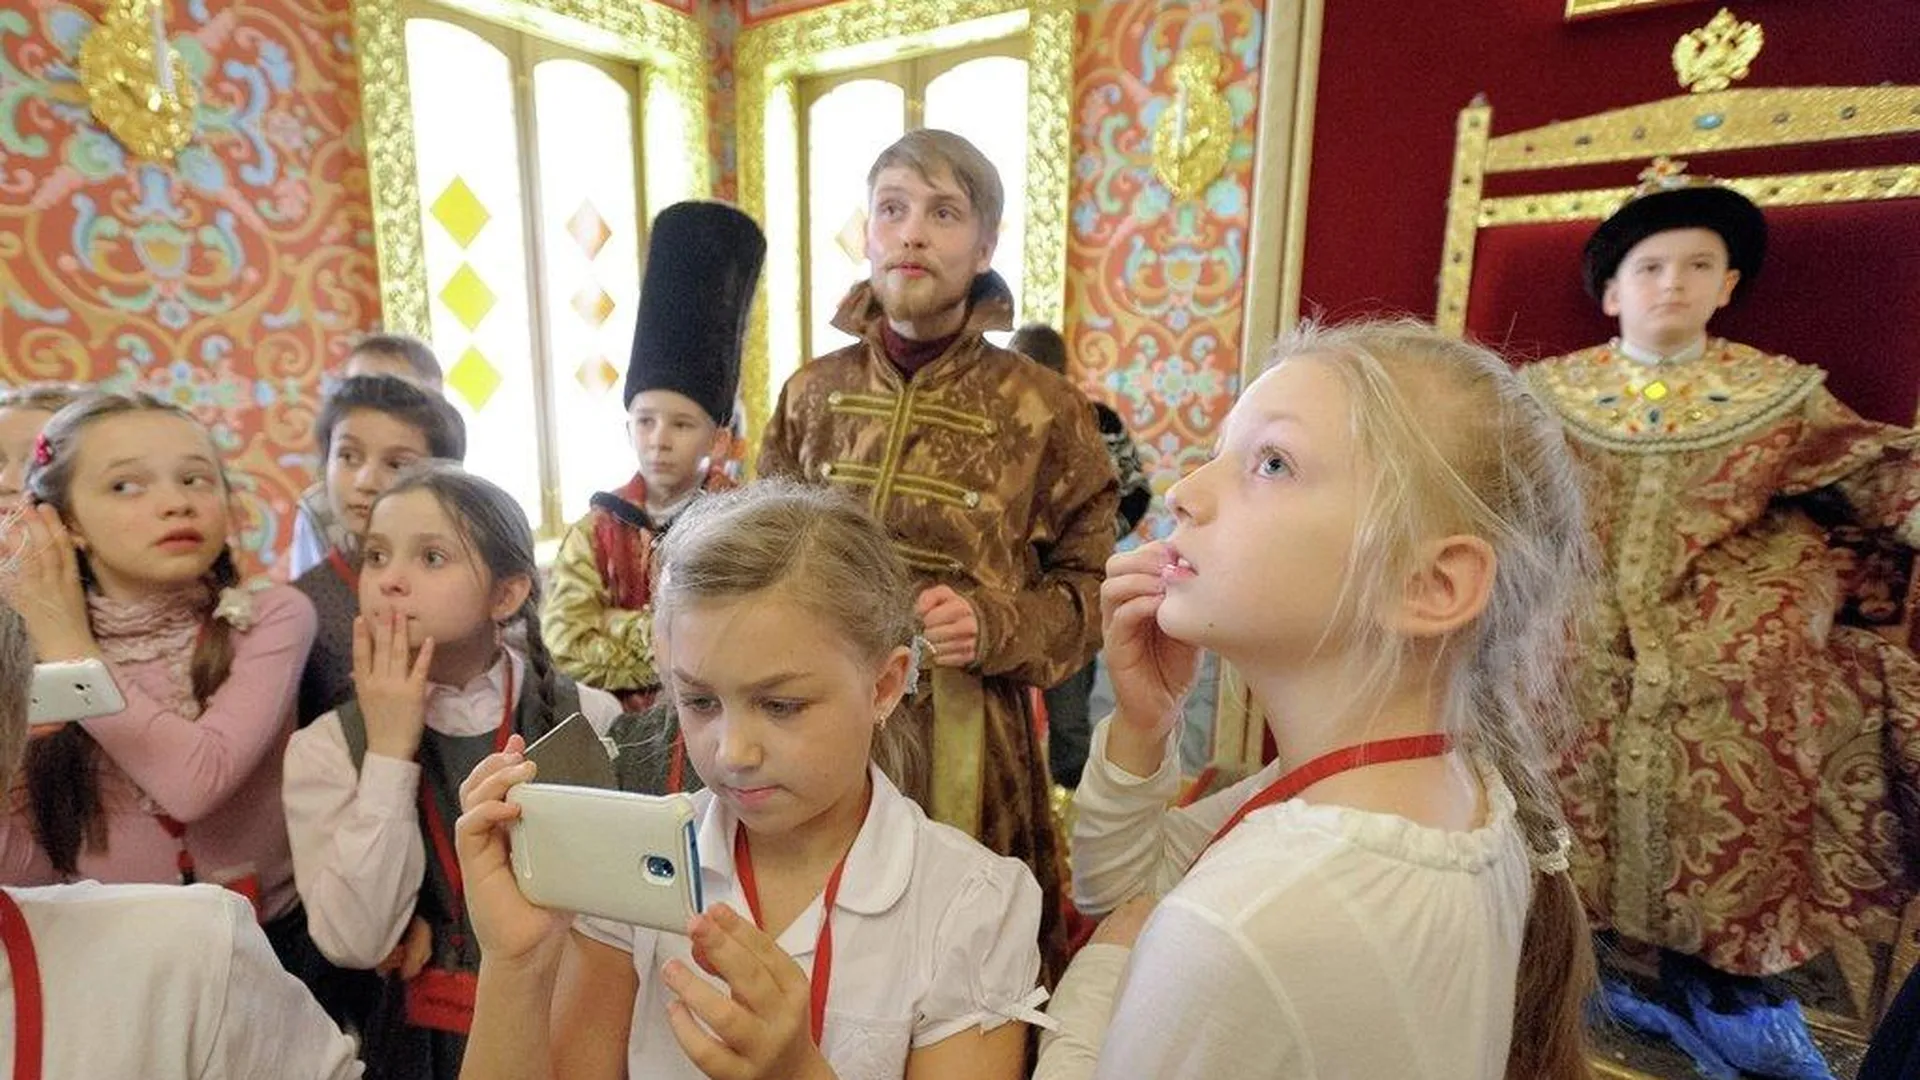 Победитель конкурса гидов Москвы проведет экскурсию по Коломенскому дворцу 21 февраля